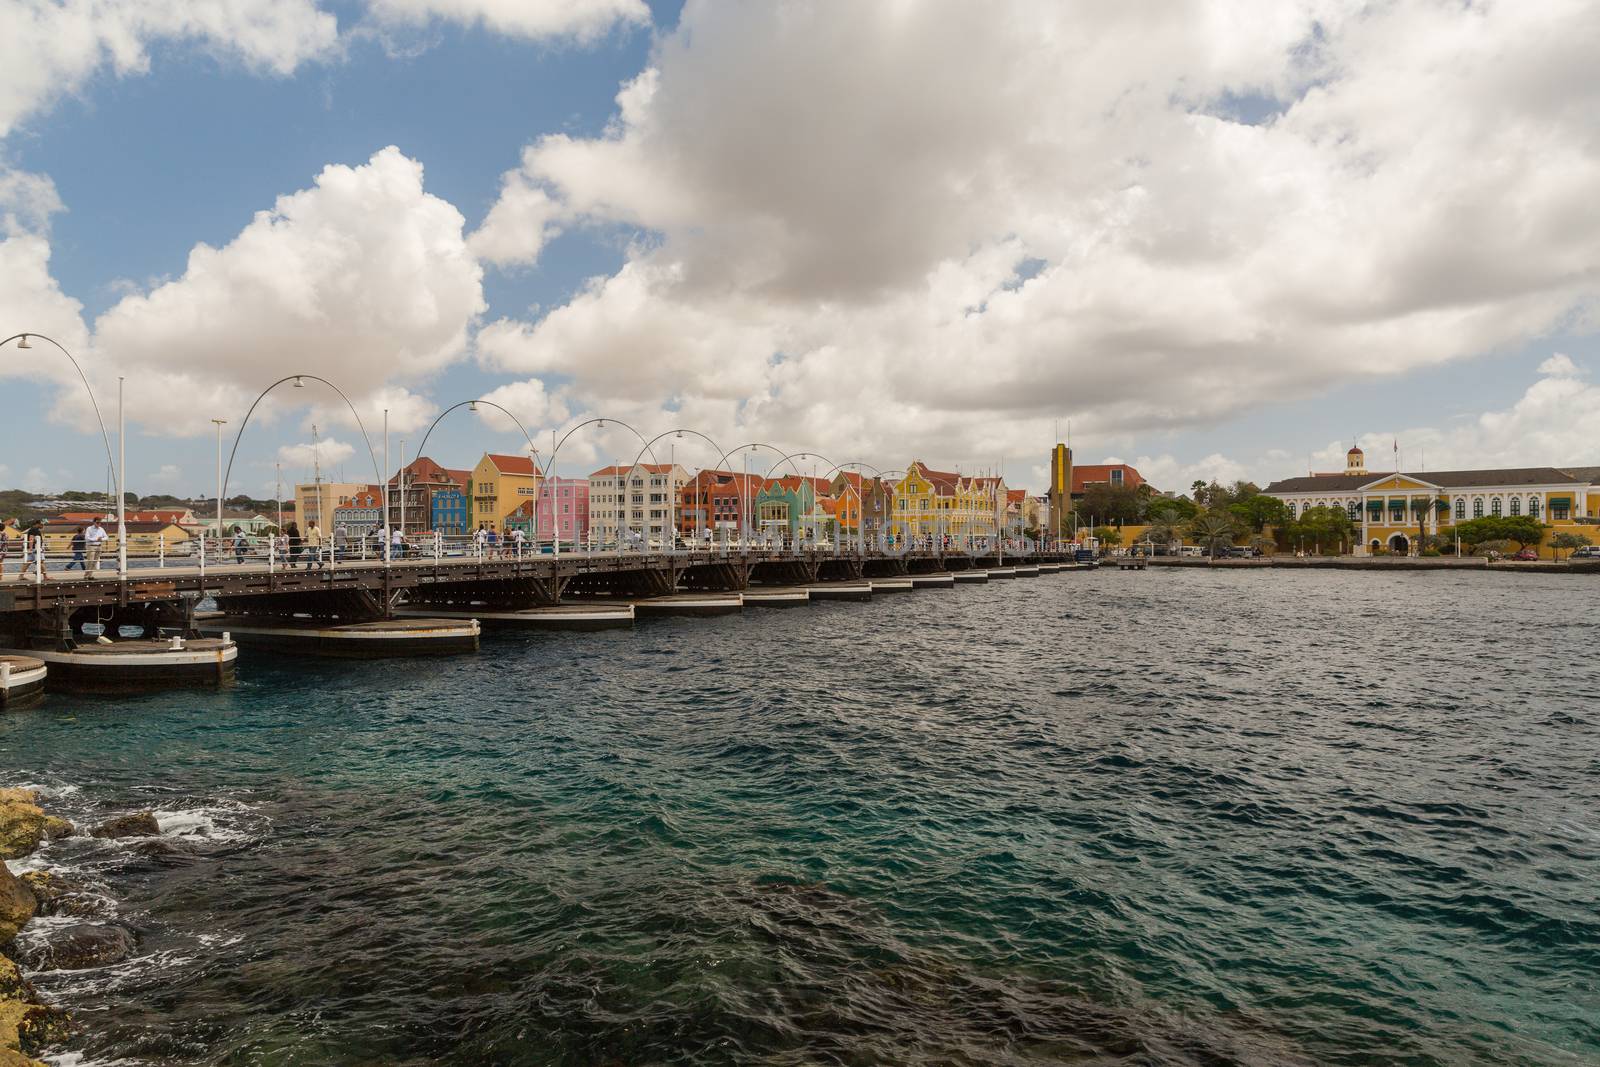 Queen Emma Bridge in Willemstad Curacao by chrisukphoto